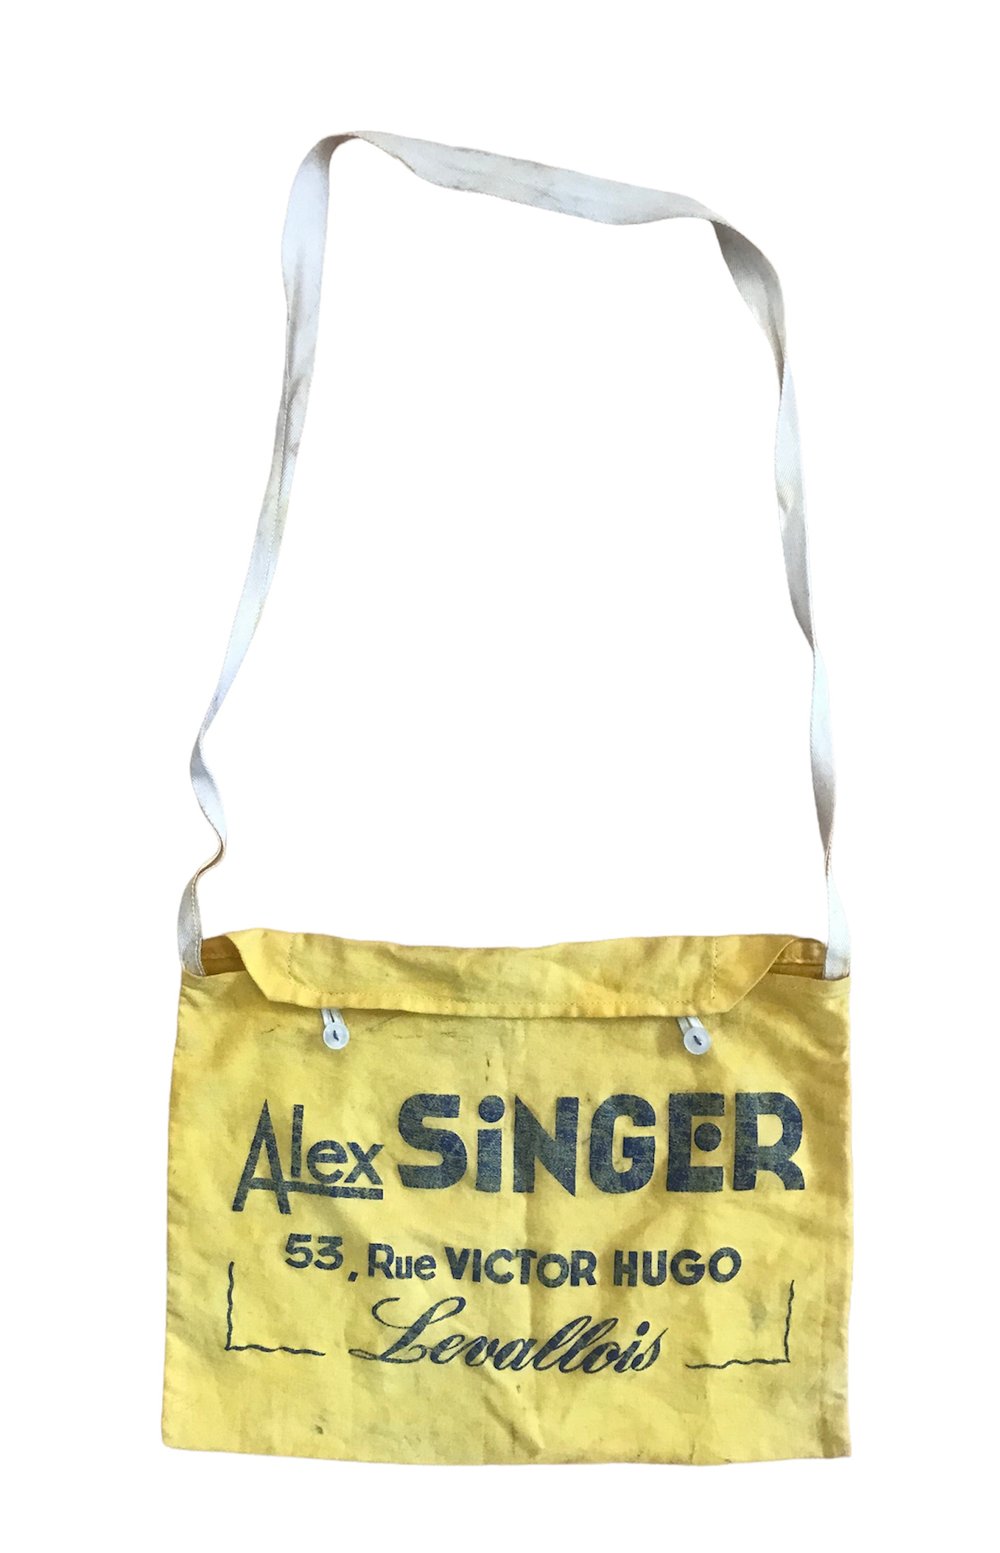 ðŸ‡«ðŸ‡· Iconic Alex Singer musette bag